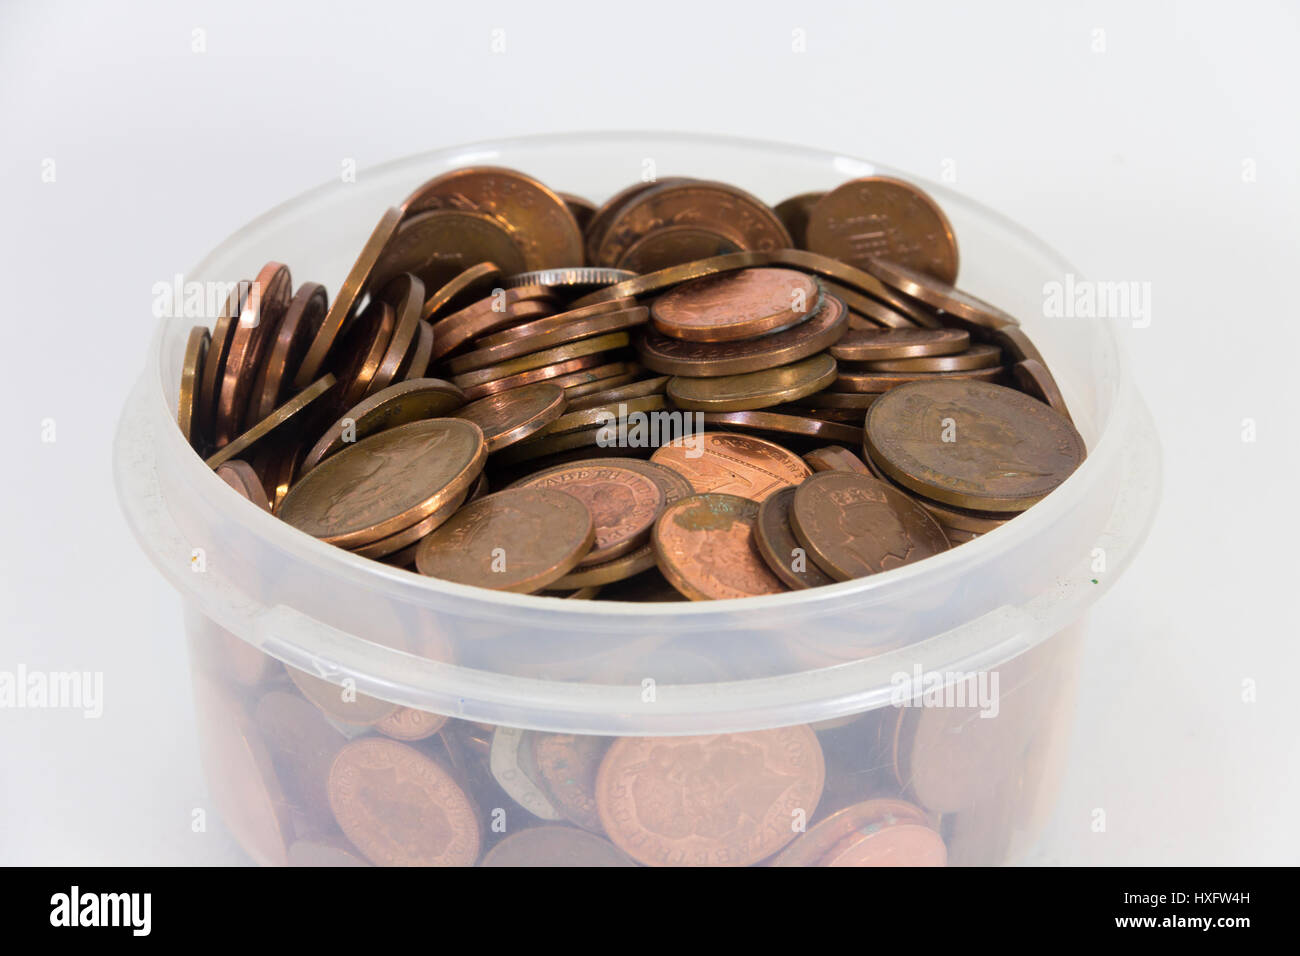 Menge der britischen Münzen, meist Kupfer 1 Pence und zwei Pence Stücke, in einer plastikwanne. Stockfoto